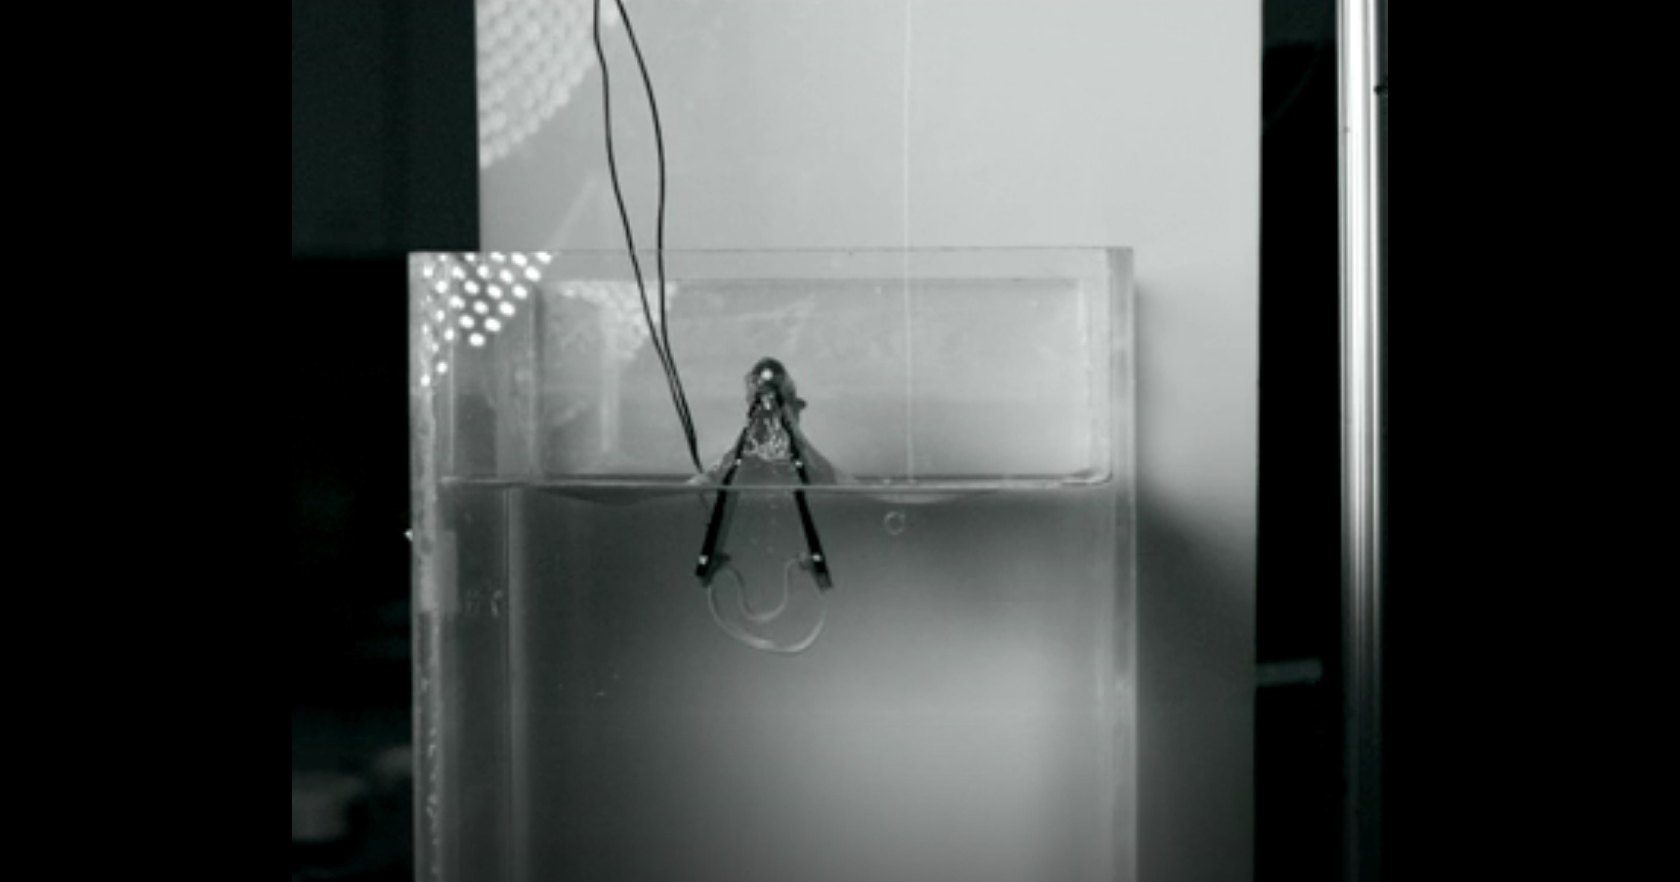 Ученые изобрели подводного прыгающего робота